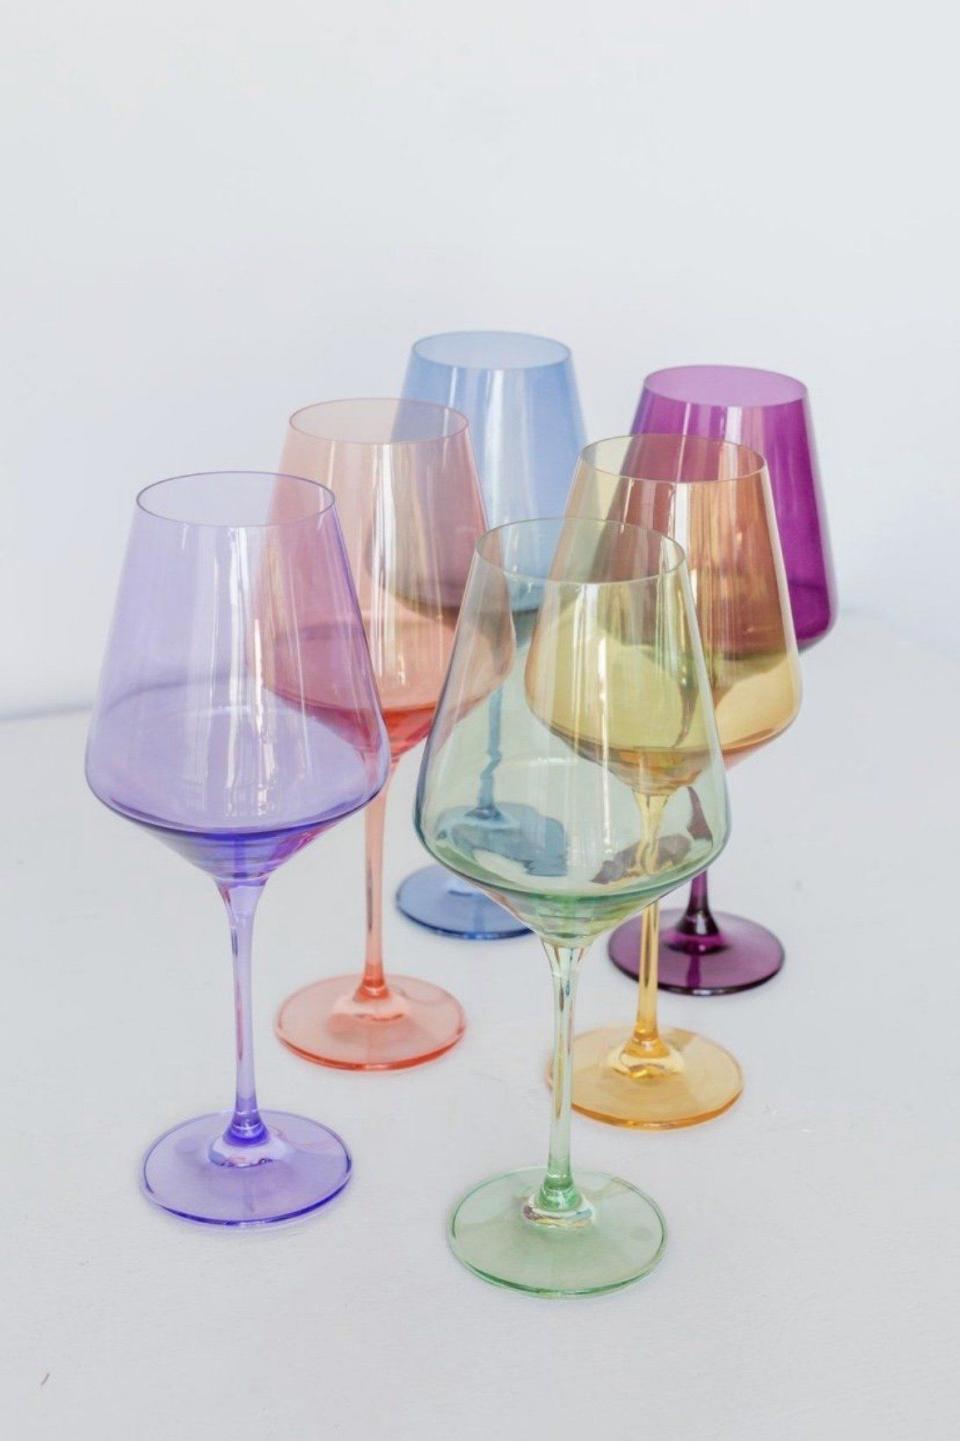 1) Estelle Colored Glass